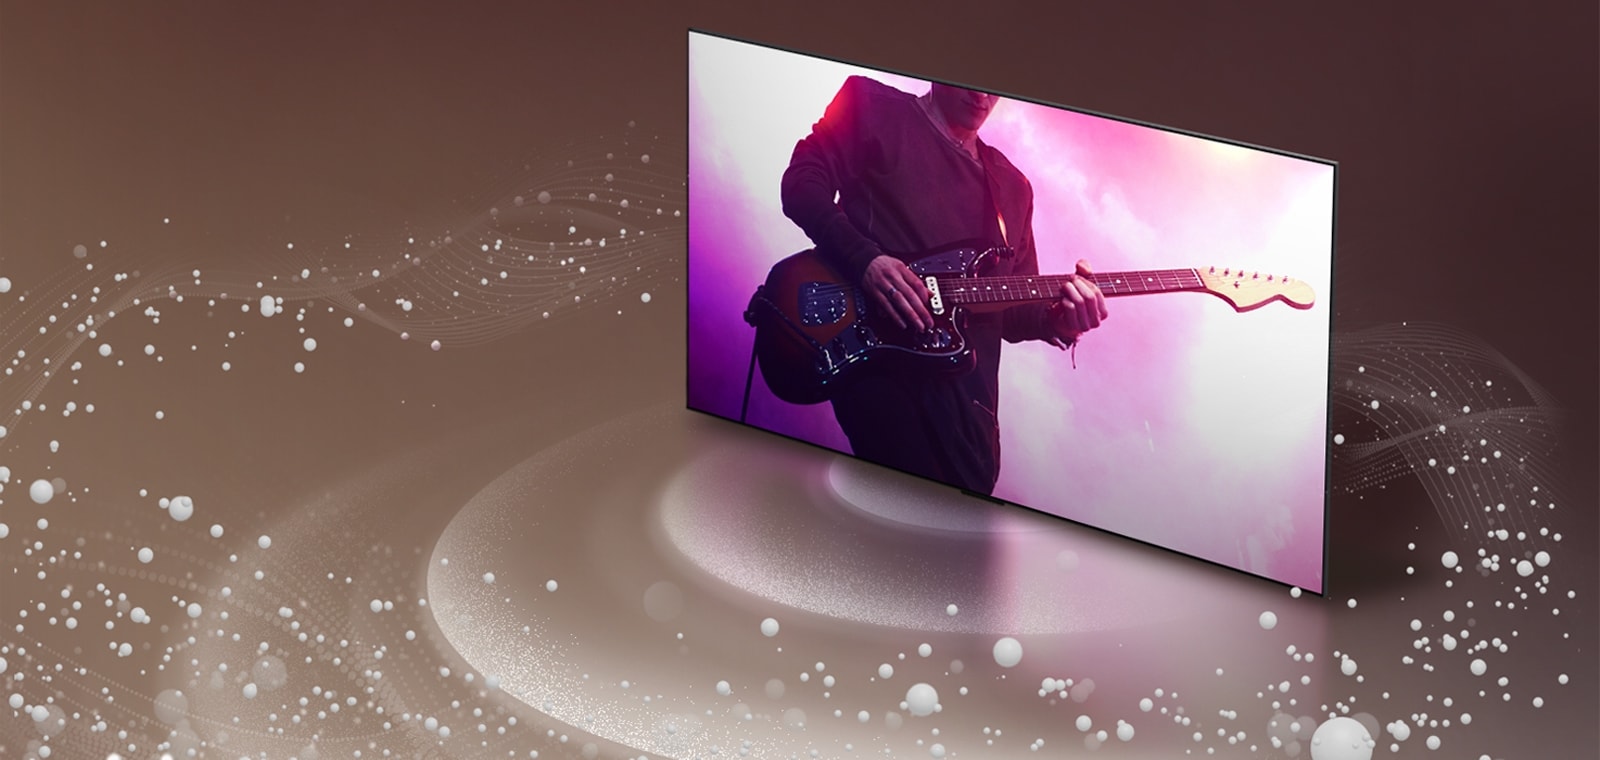 Телевизор LG OLED со звуковыми пузырями и волнами, выходящими из экрана и заполняющими комнату.